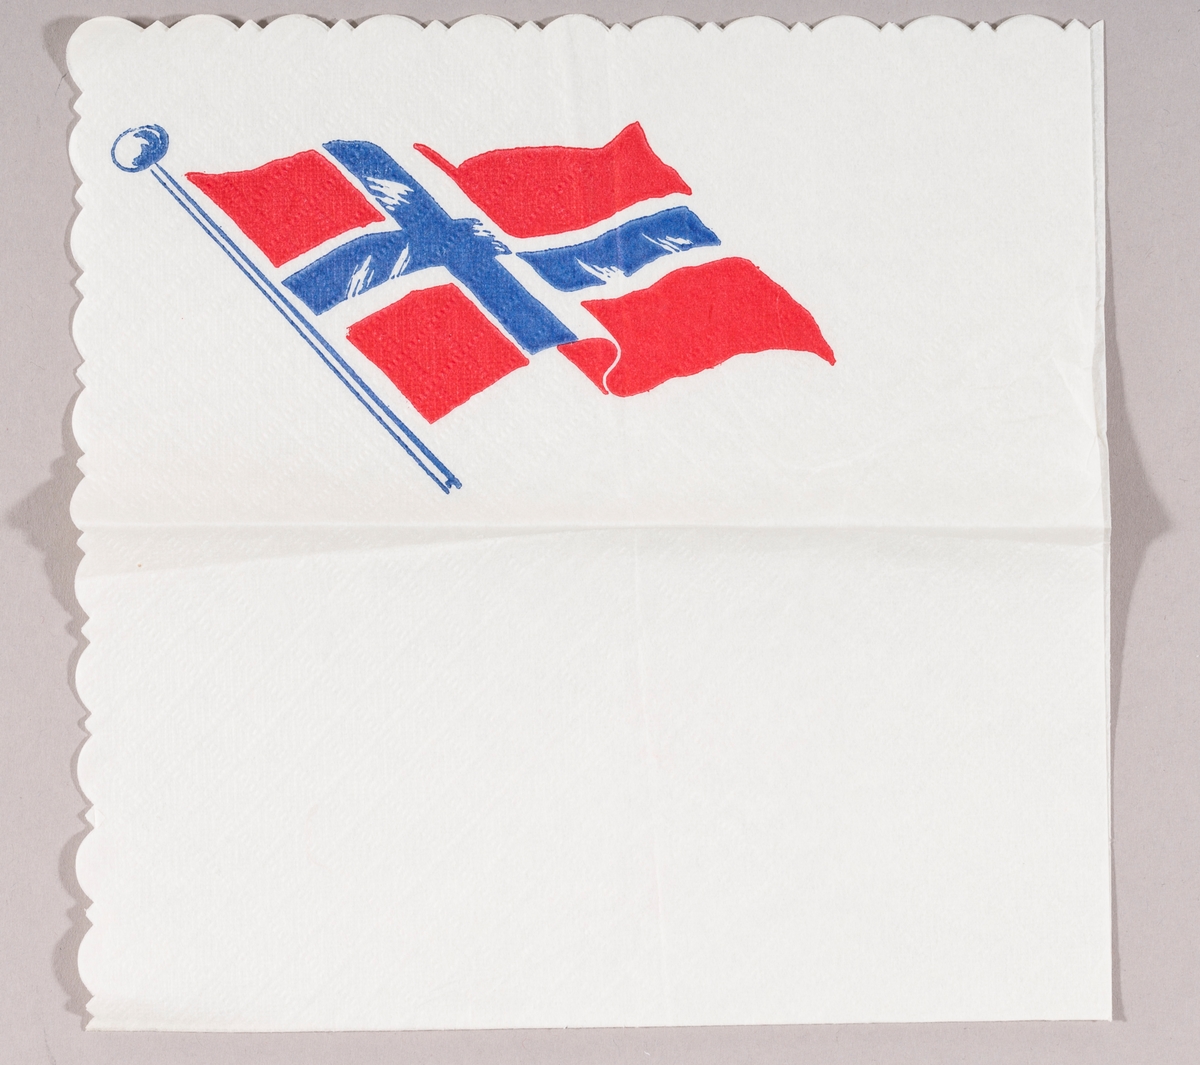 Et norsk flagg i vinden.